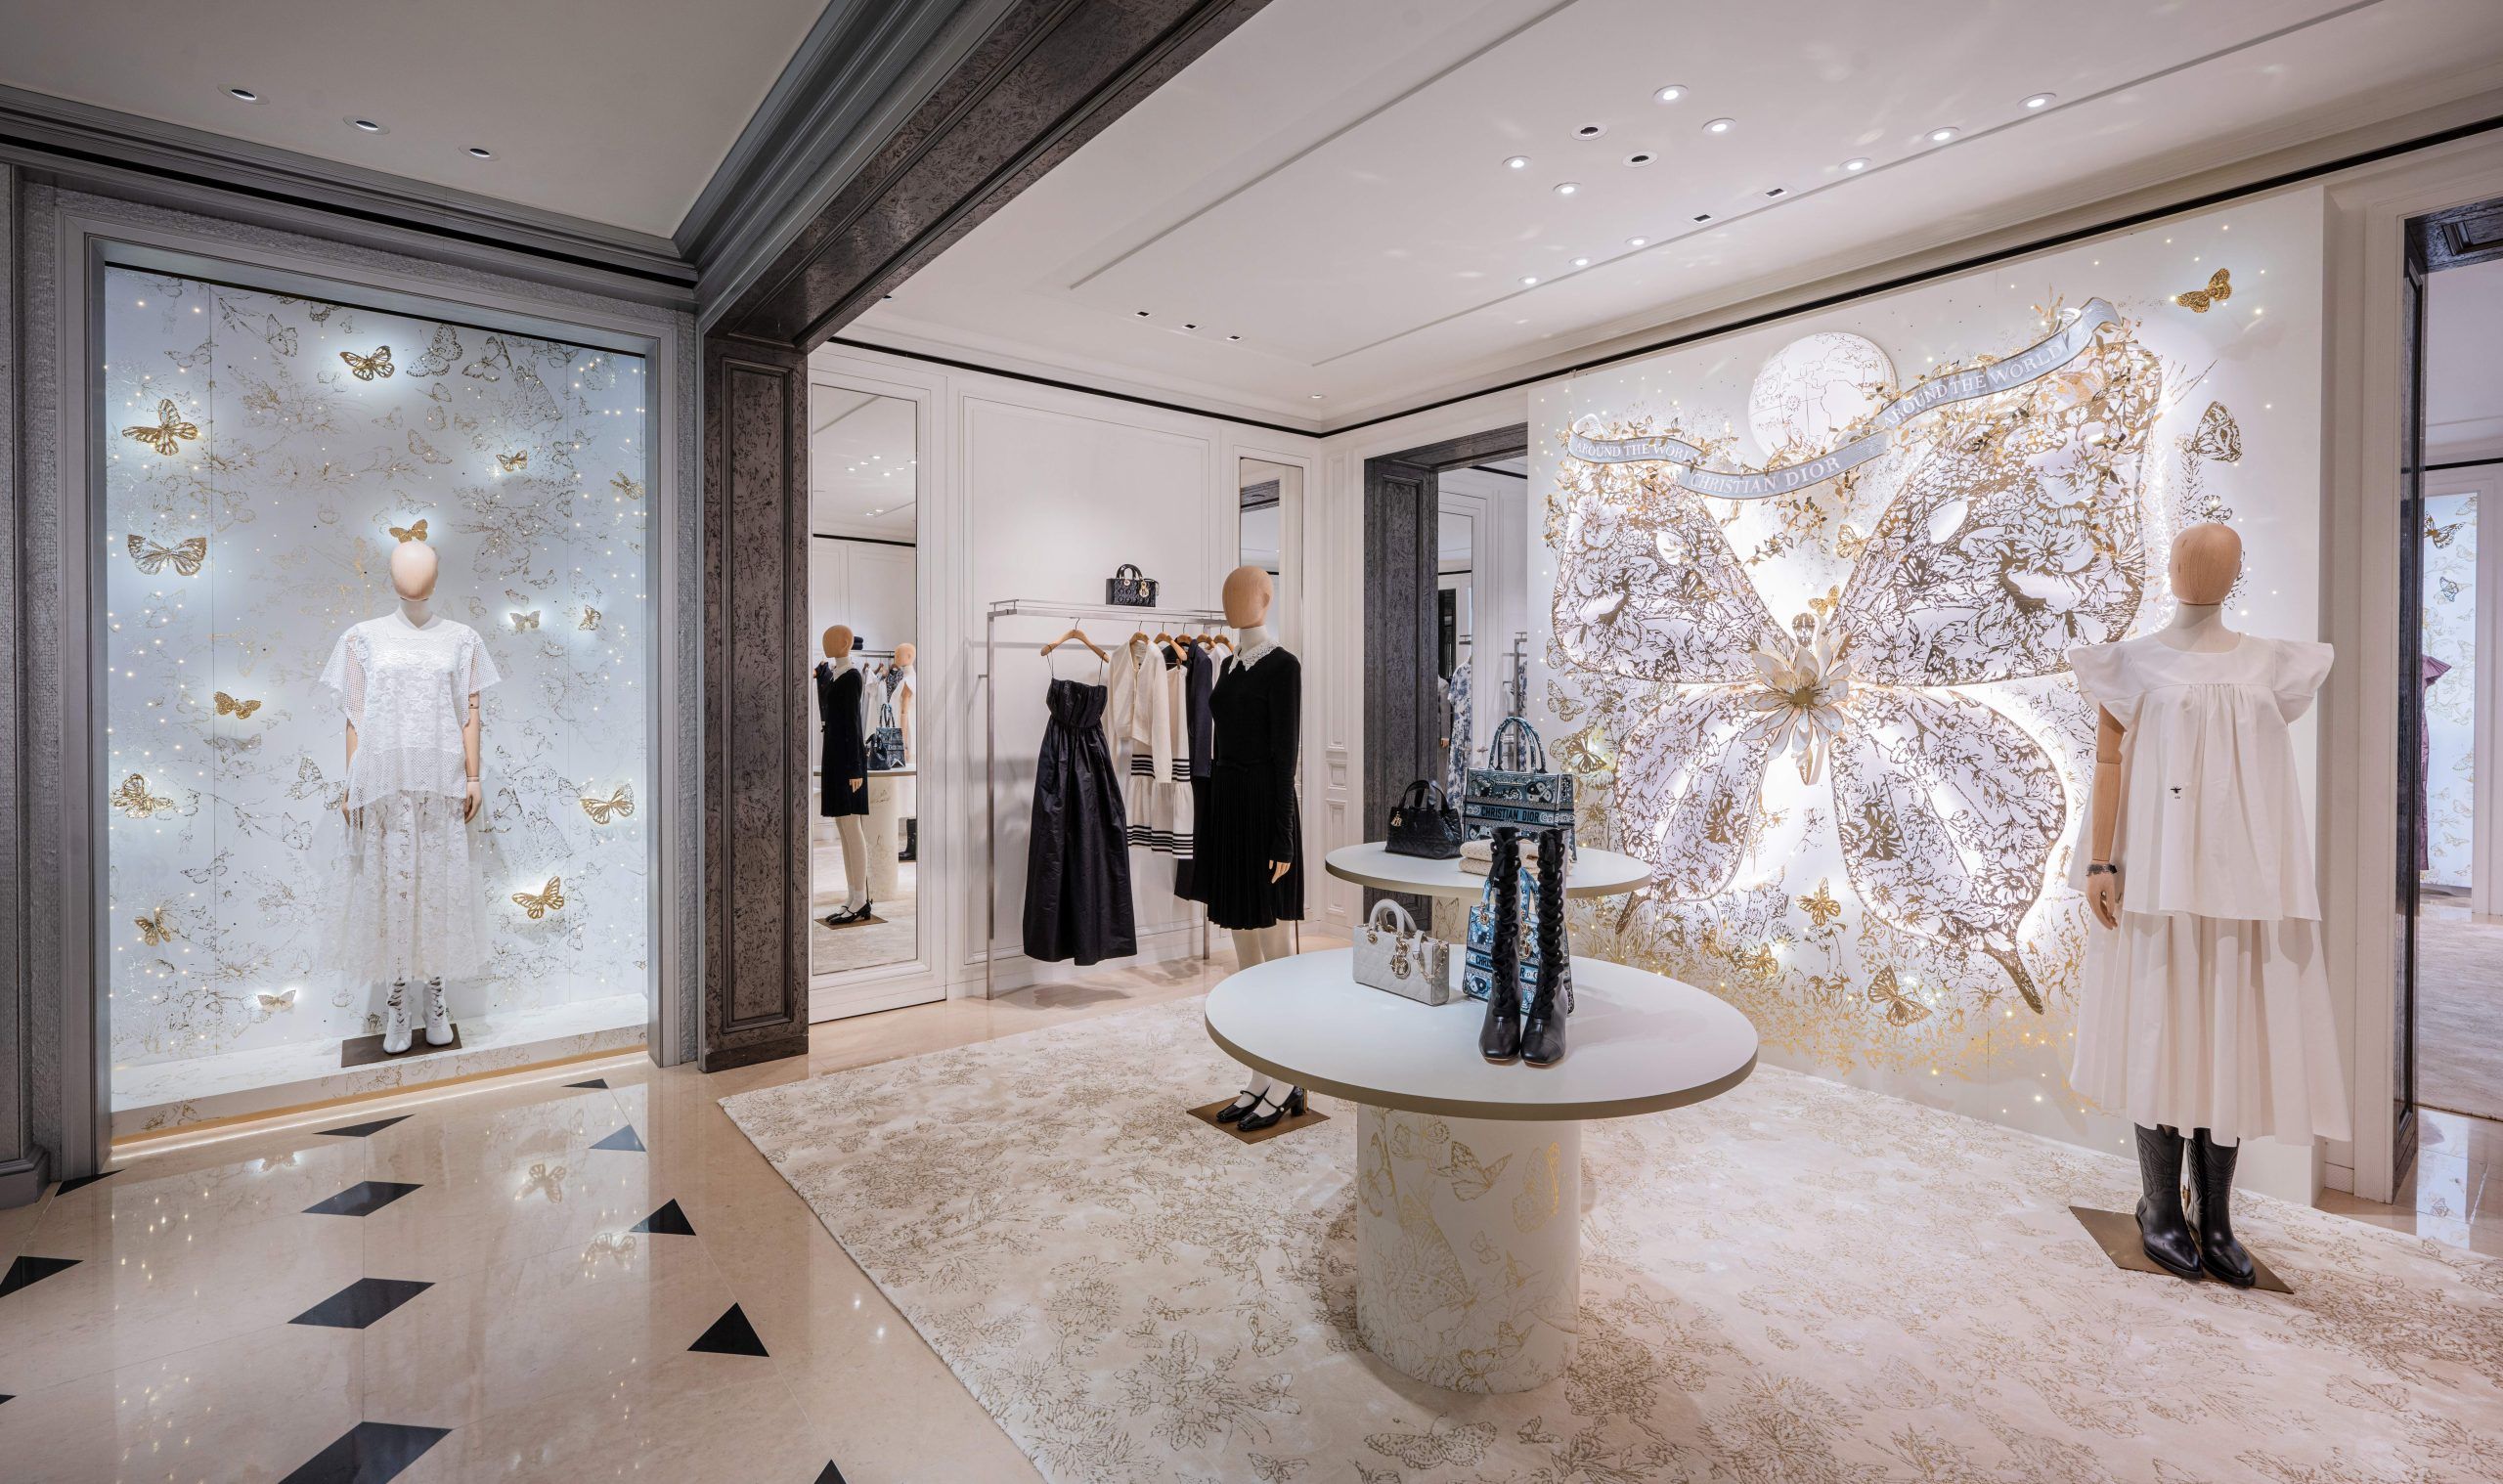 Dior Christmas decor